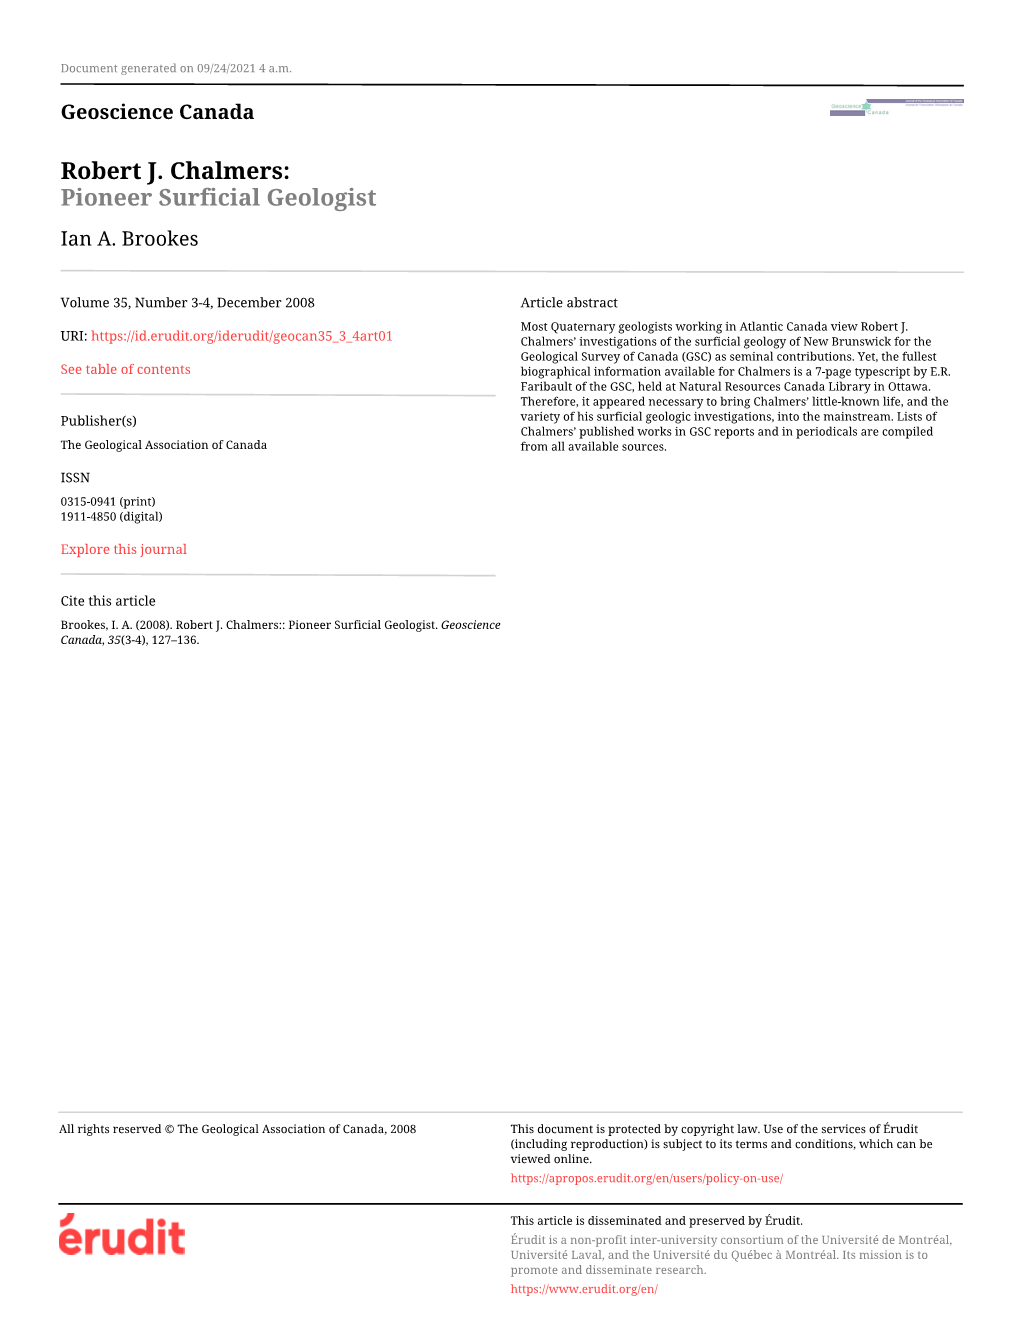 Robert J. Chalmers:: Pioneer Surficial Geologist